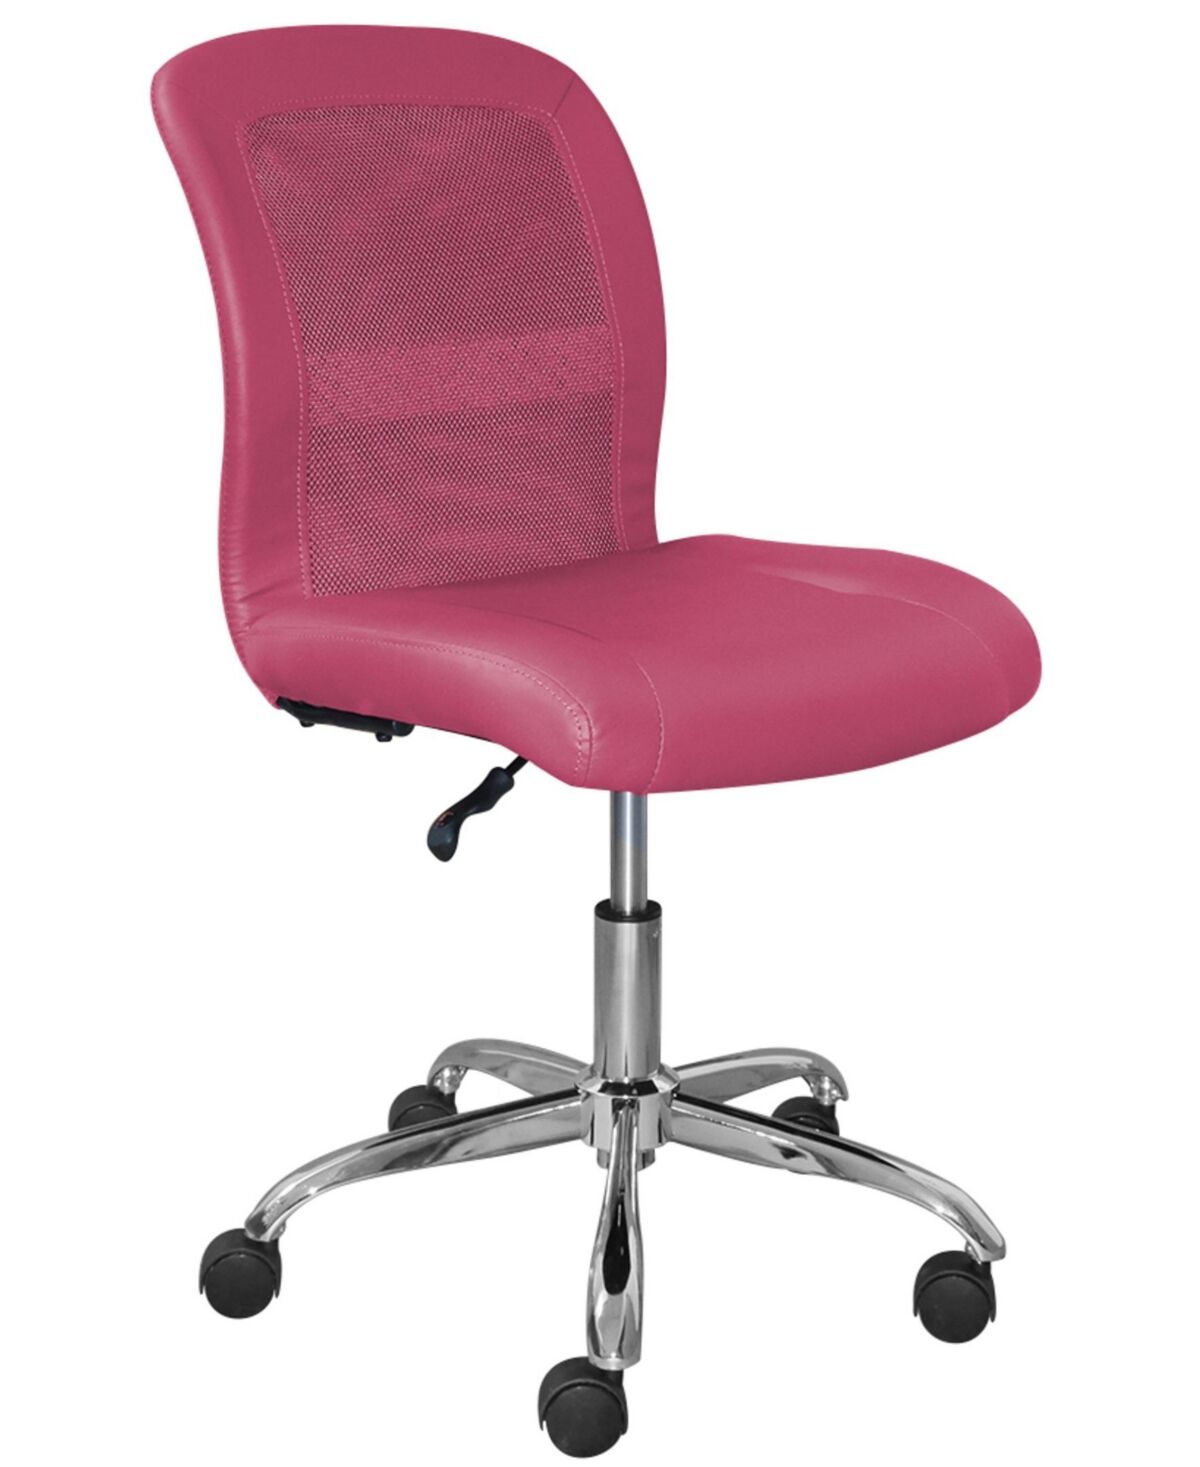 Serta Essentials Ergonomic Computer Task Chair - Dark Pink